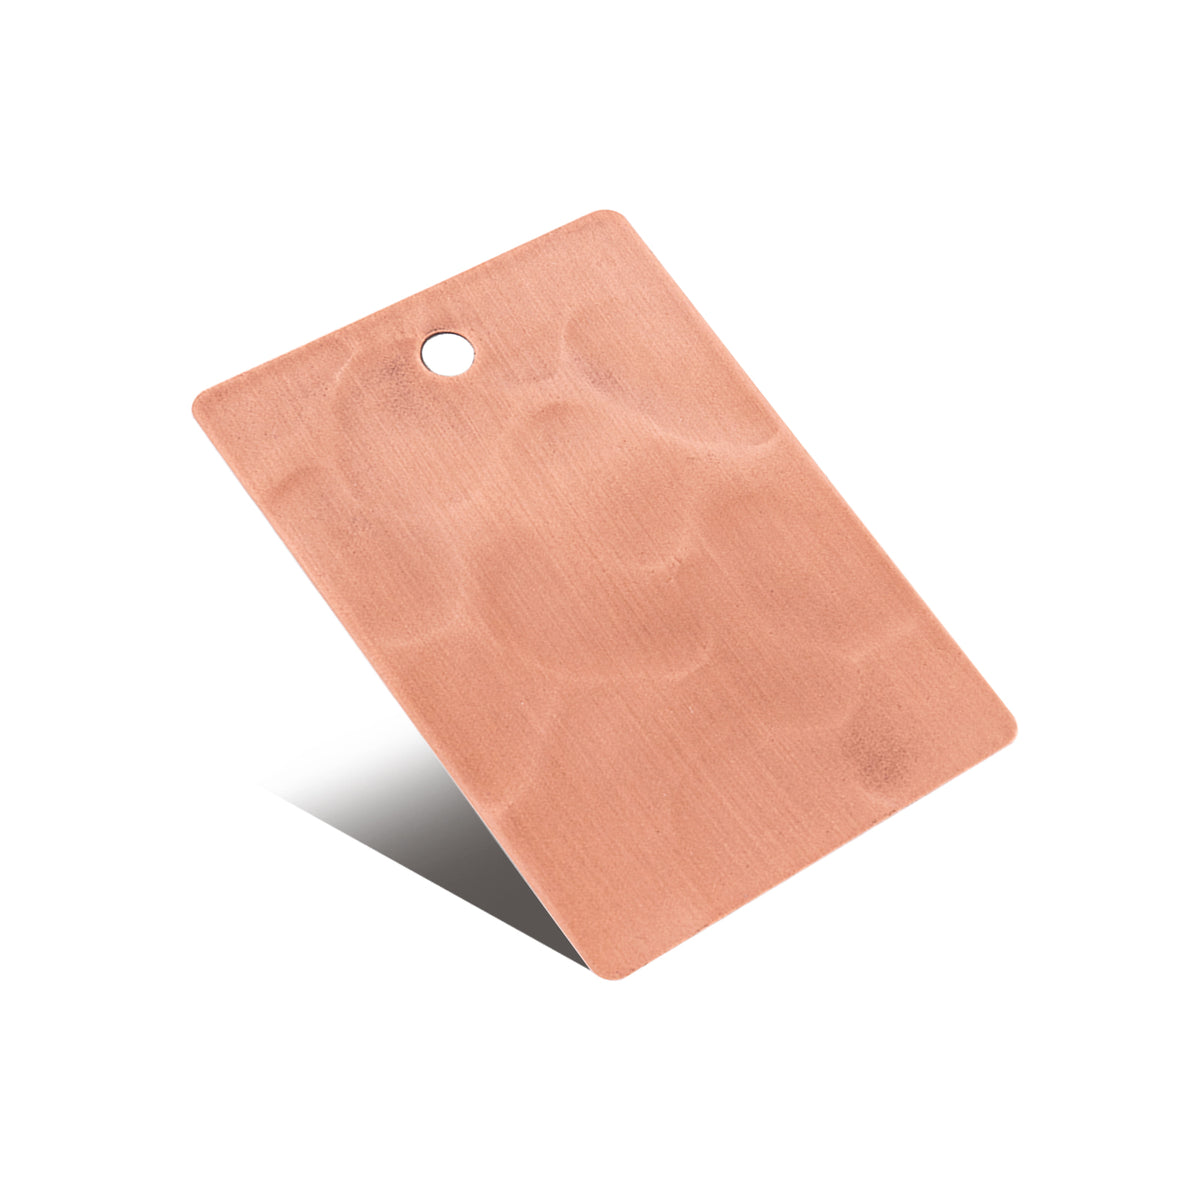 Fobest custom natural copper light hammered color sample